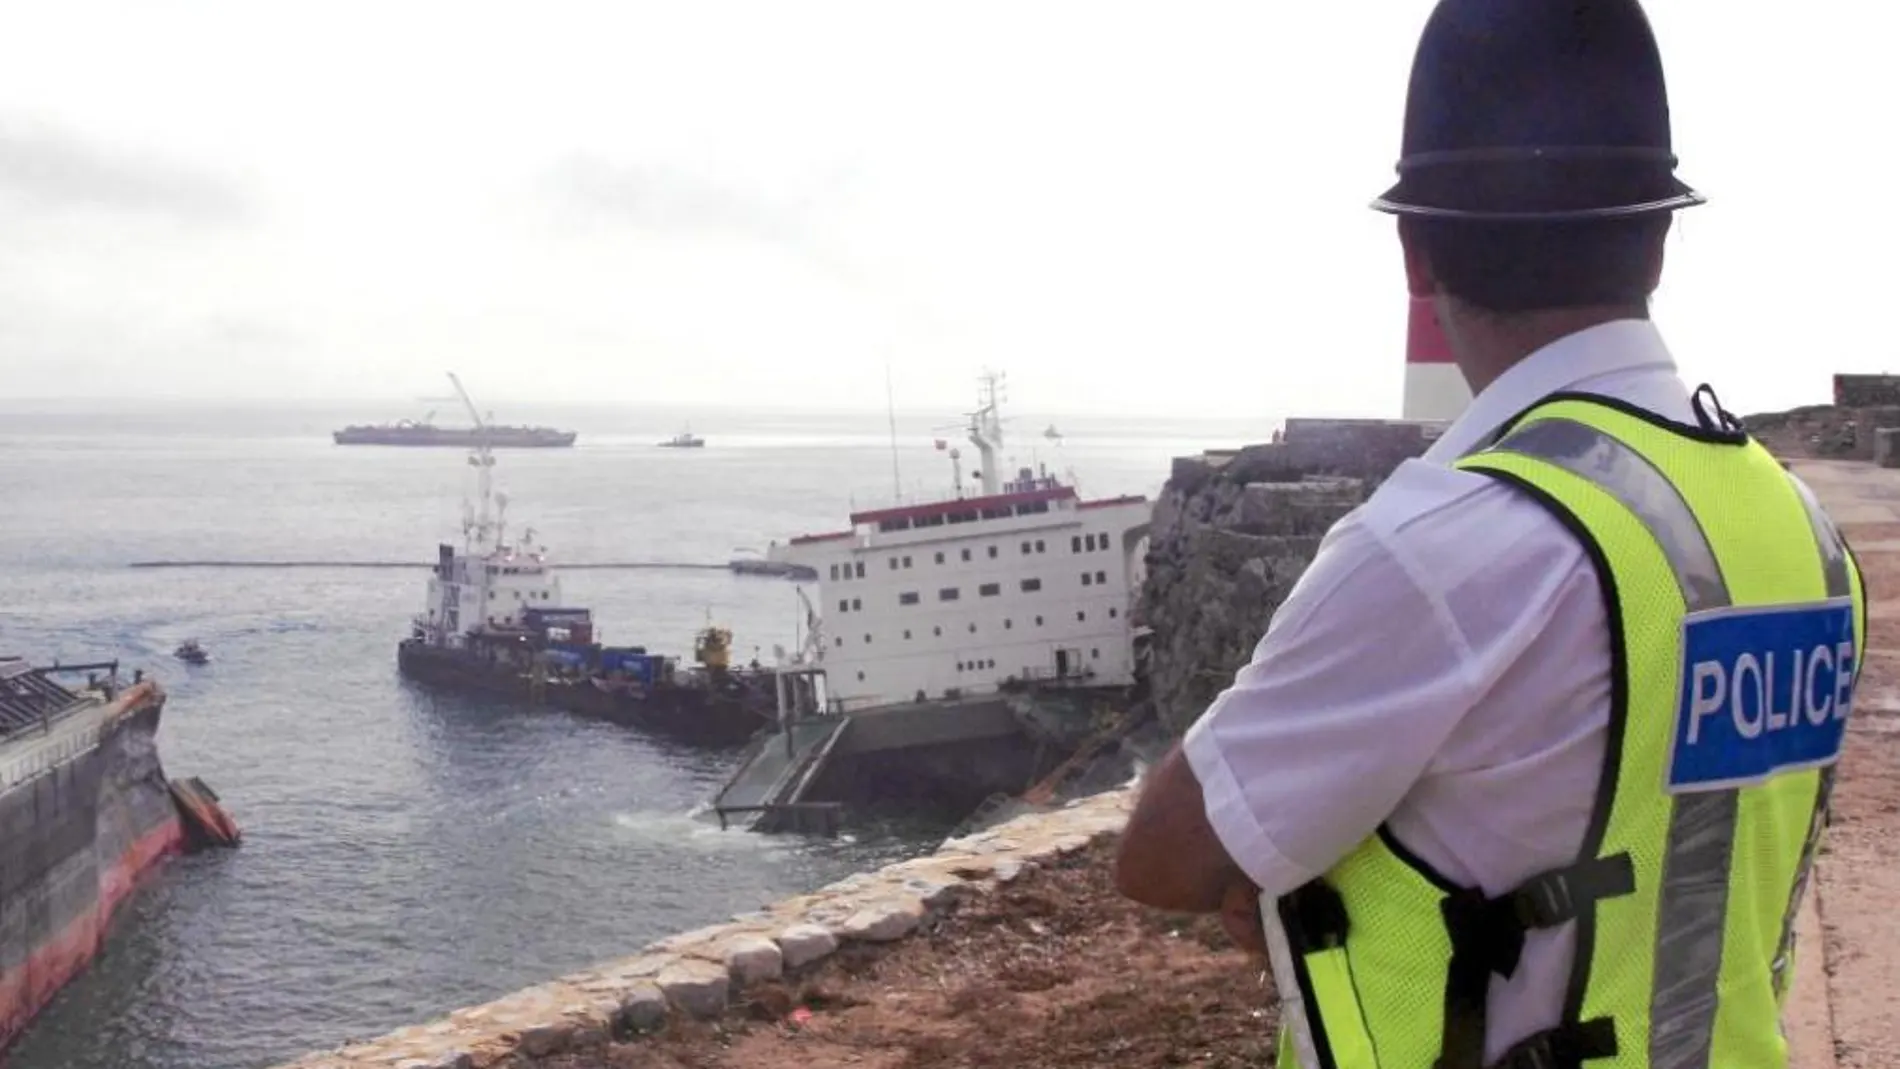 Un policía observa el estado en que se encuentra el buque "Fedra"que el pasado viernes encalló debido al fuerte temporal de lluvia y viento registrado en el Estrecho de Gibraltar, y el sábado se partió en dos vertiendo al mar 150 de las 300 toneladas que albergaba en uno de sus tanques para su propio abastecimiento.